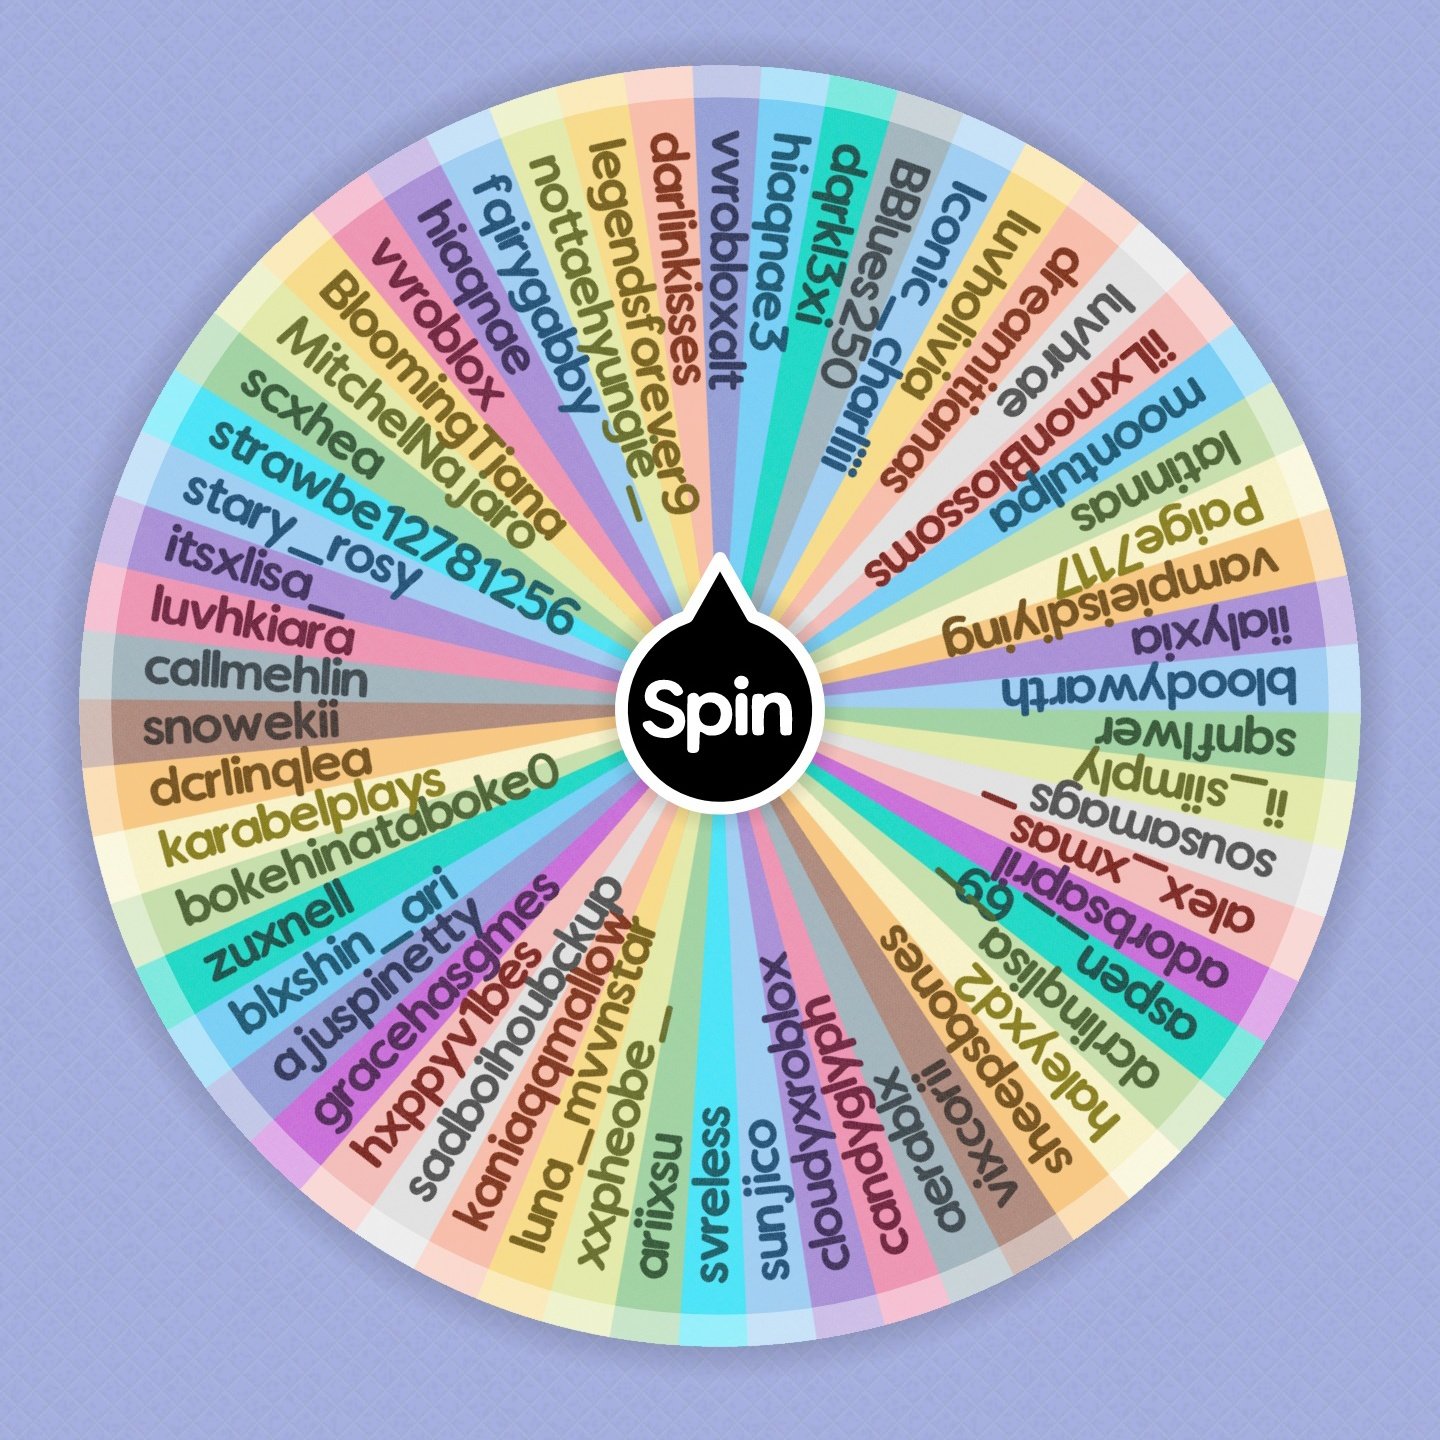 ♡20 Popular Roblox Games♡  Spin the Wheel - Random Picker